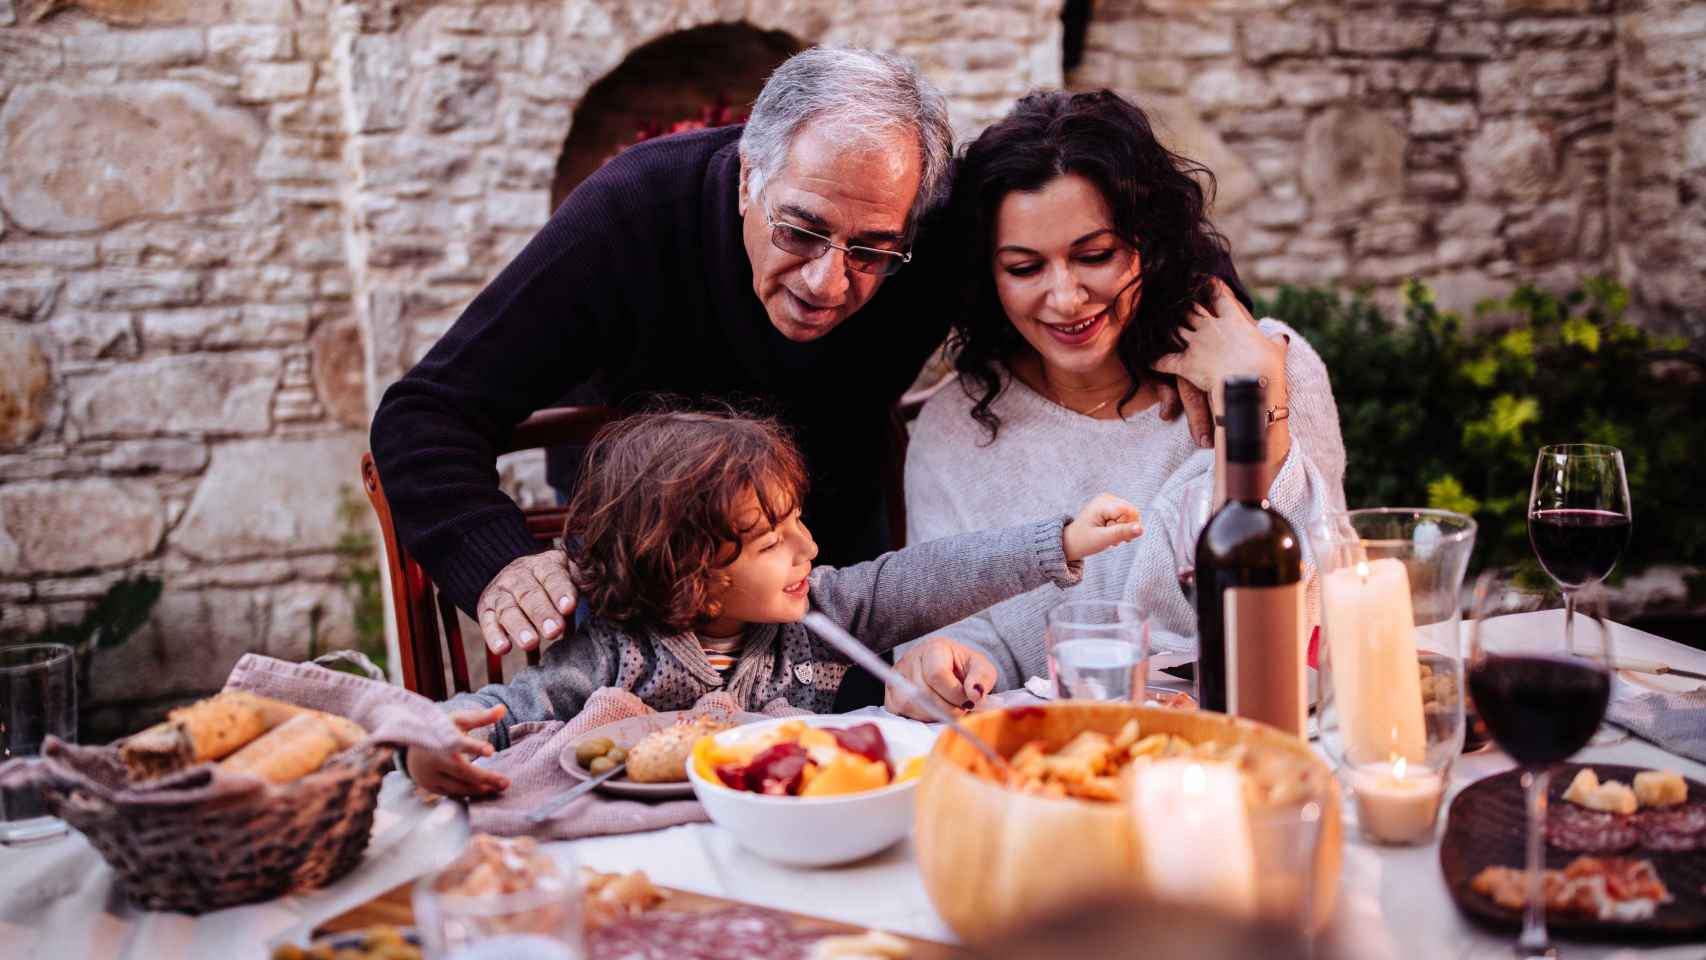 El vino es parte de la dieta mediterránea, pero hay que controlar su consumo.